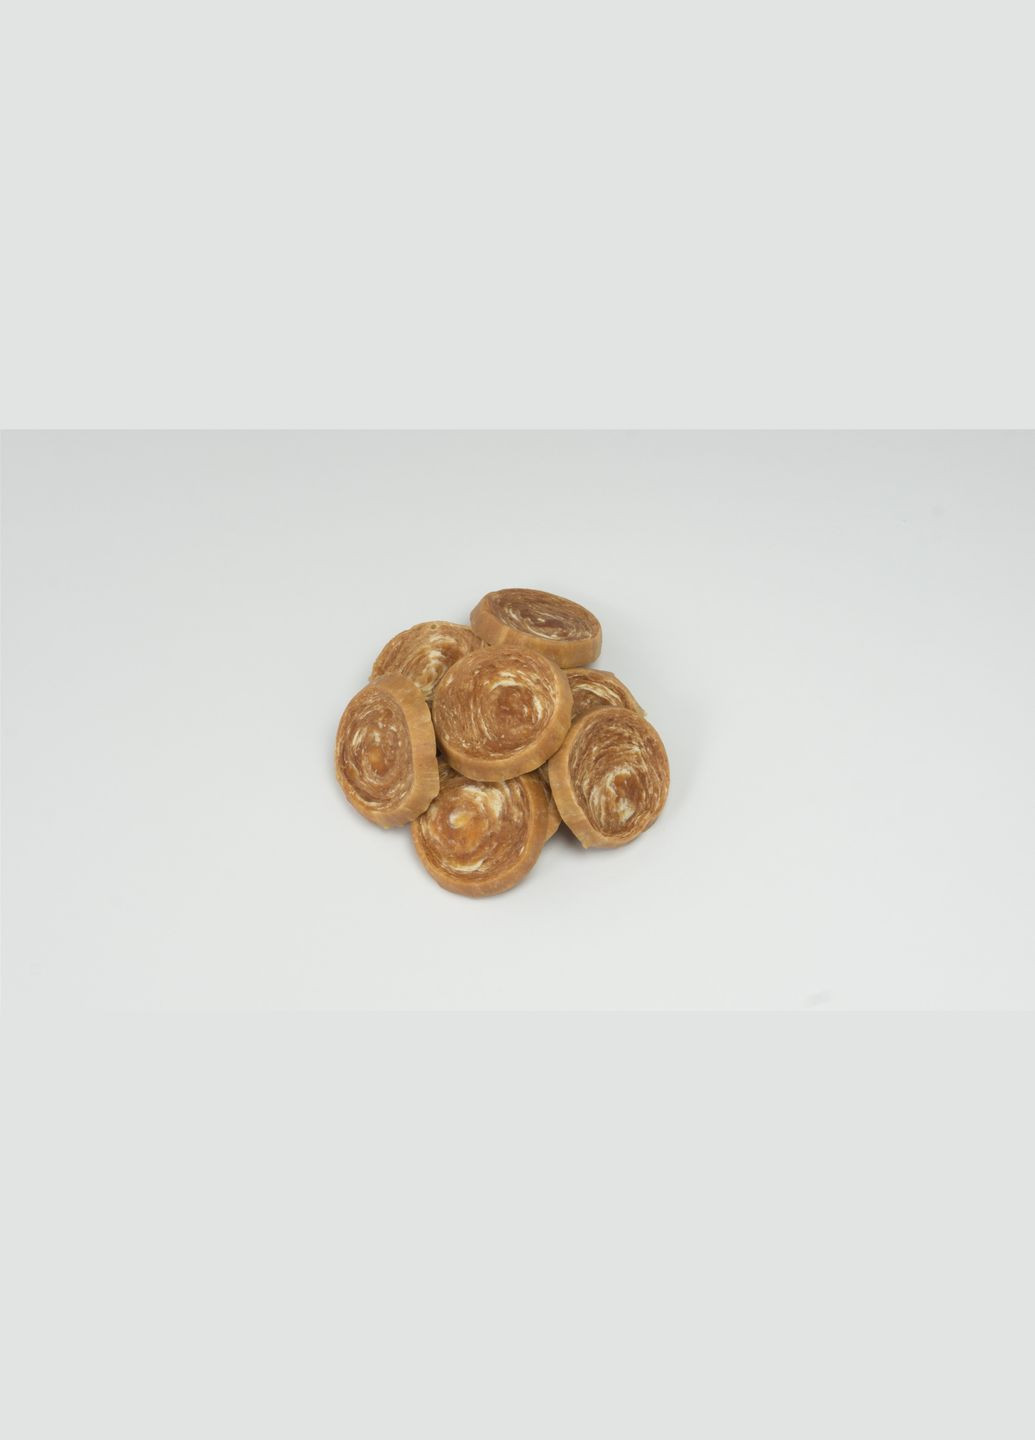 Ласощі Snack лососеві медальйони з тріскою для собак 500 г (2000981199517) AnimAll (279568715)